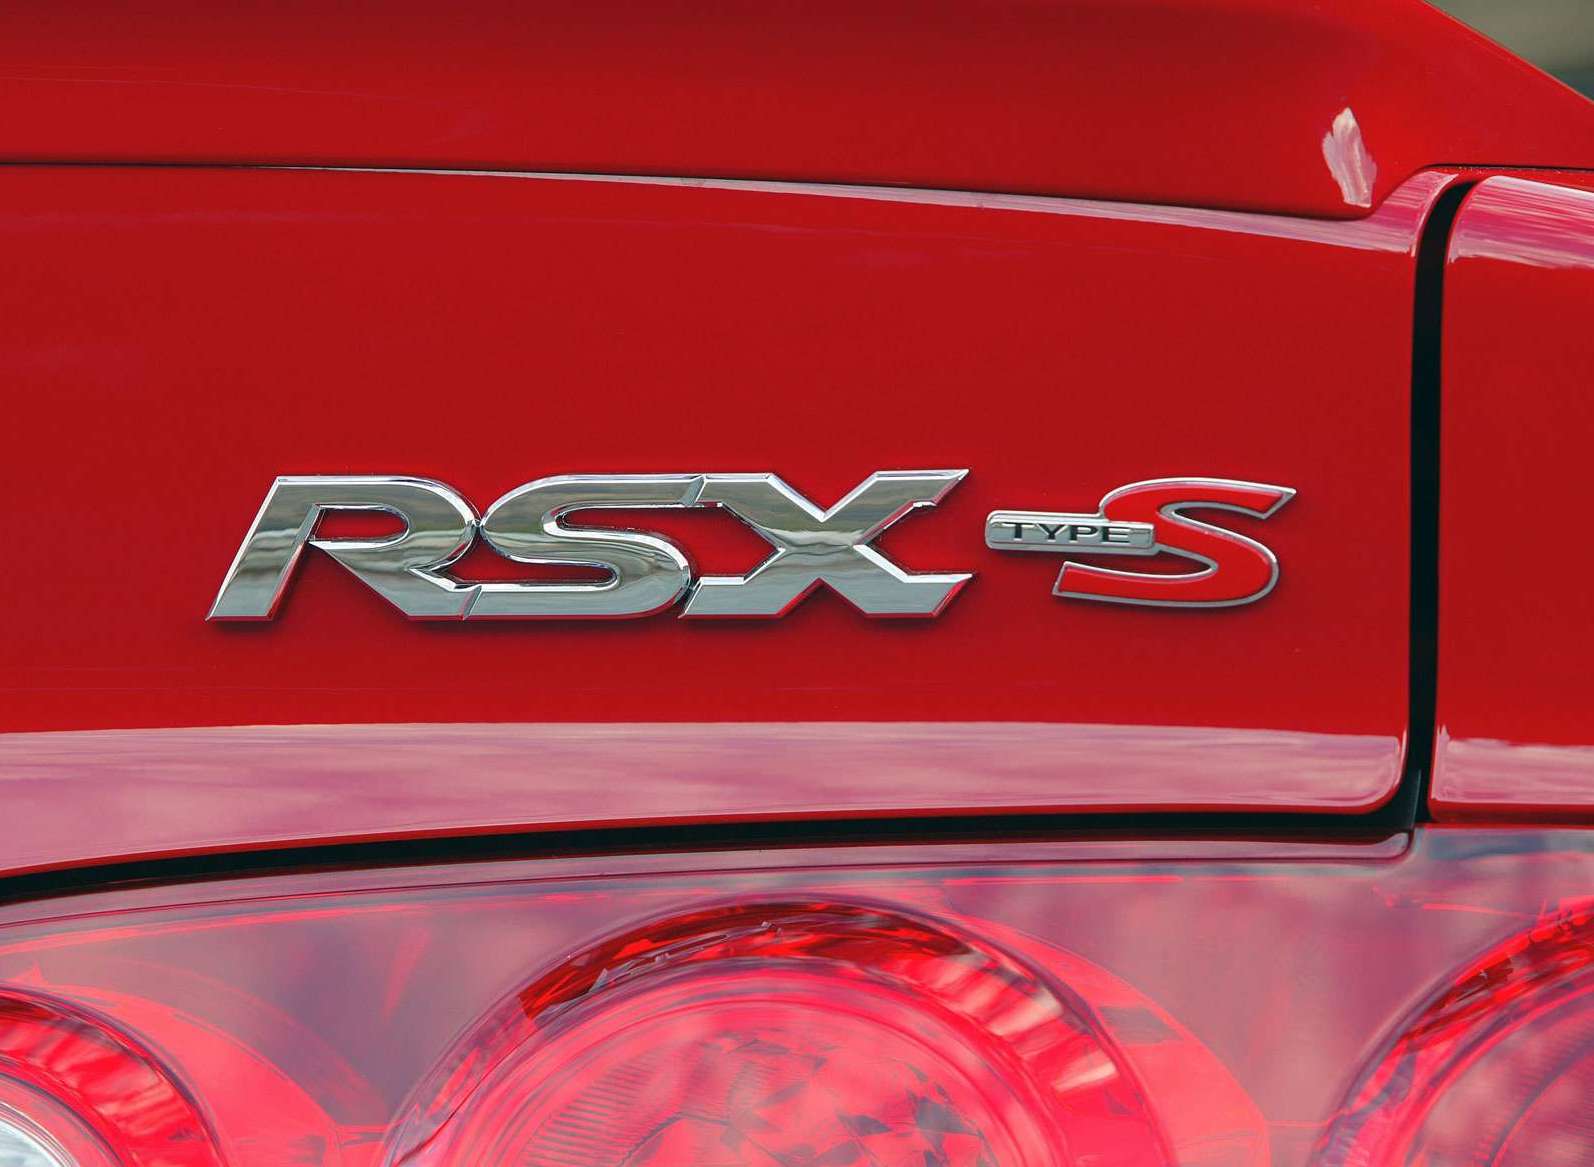 2005 Acura RSX Type S Badge